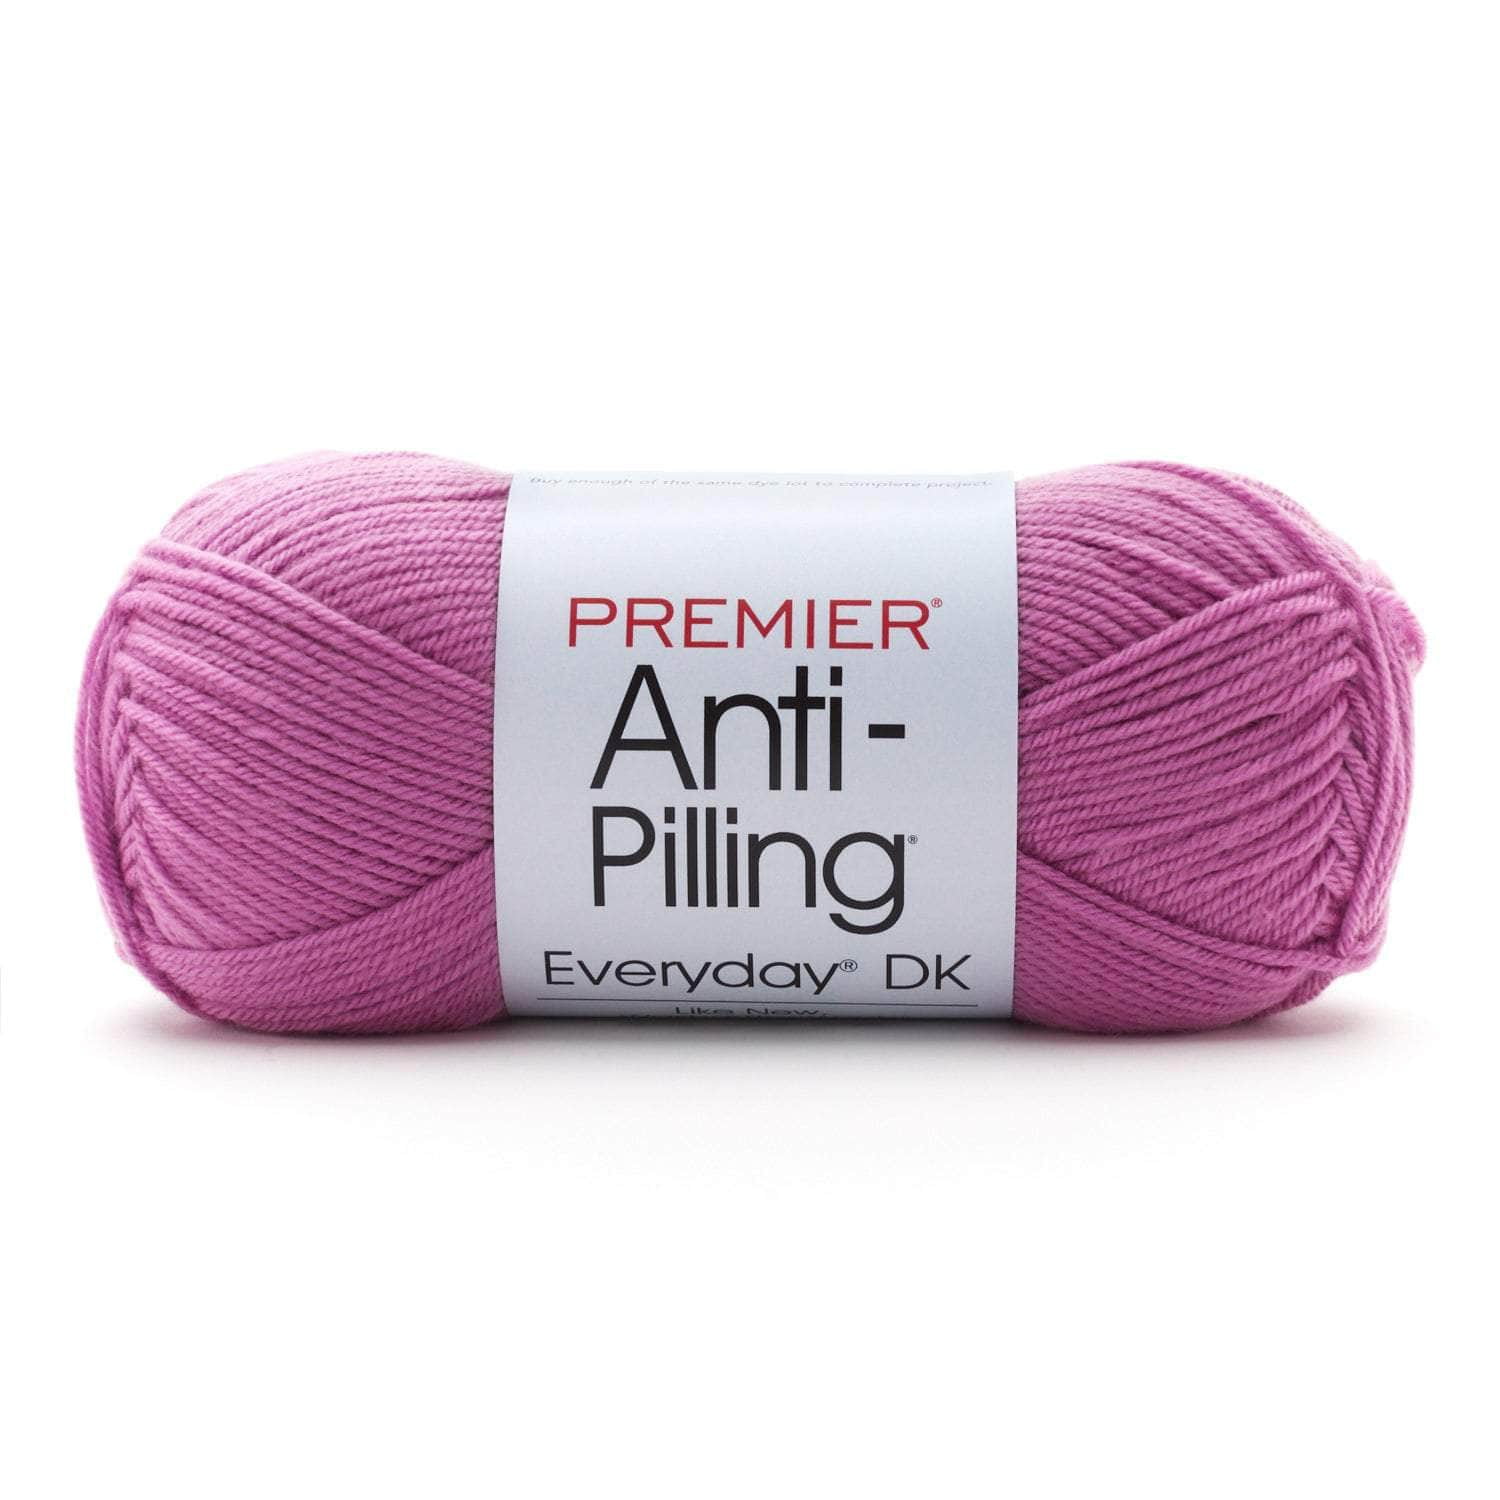 Premier Yarns Ribbon Yarn-Plum